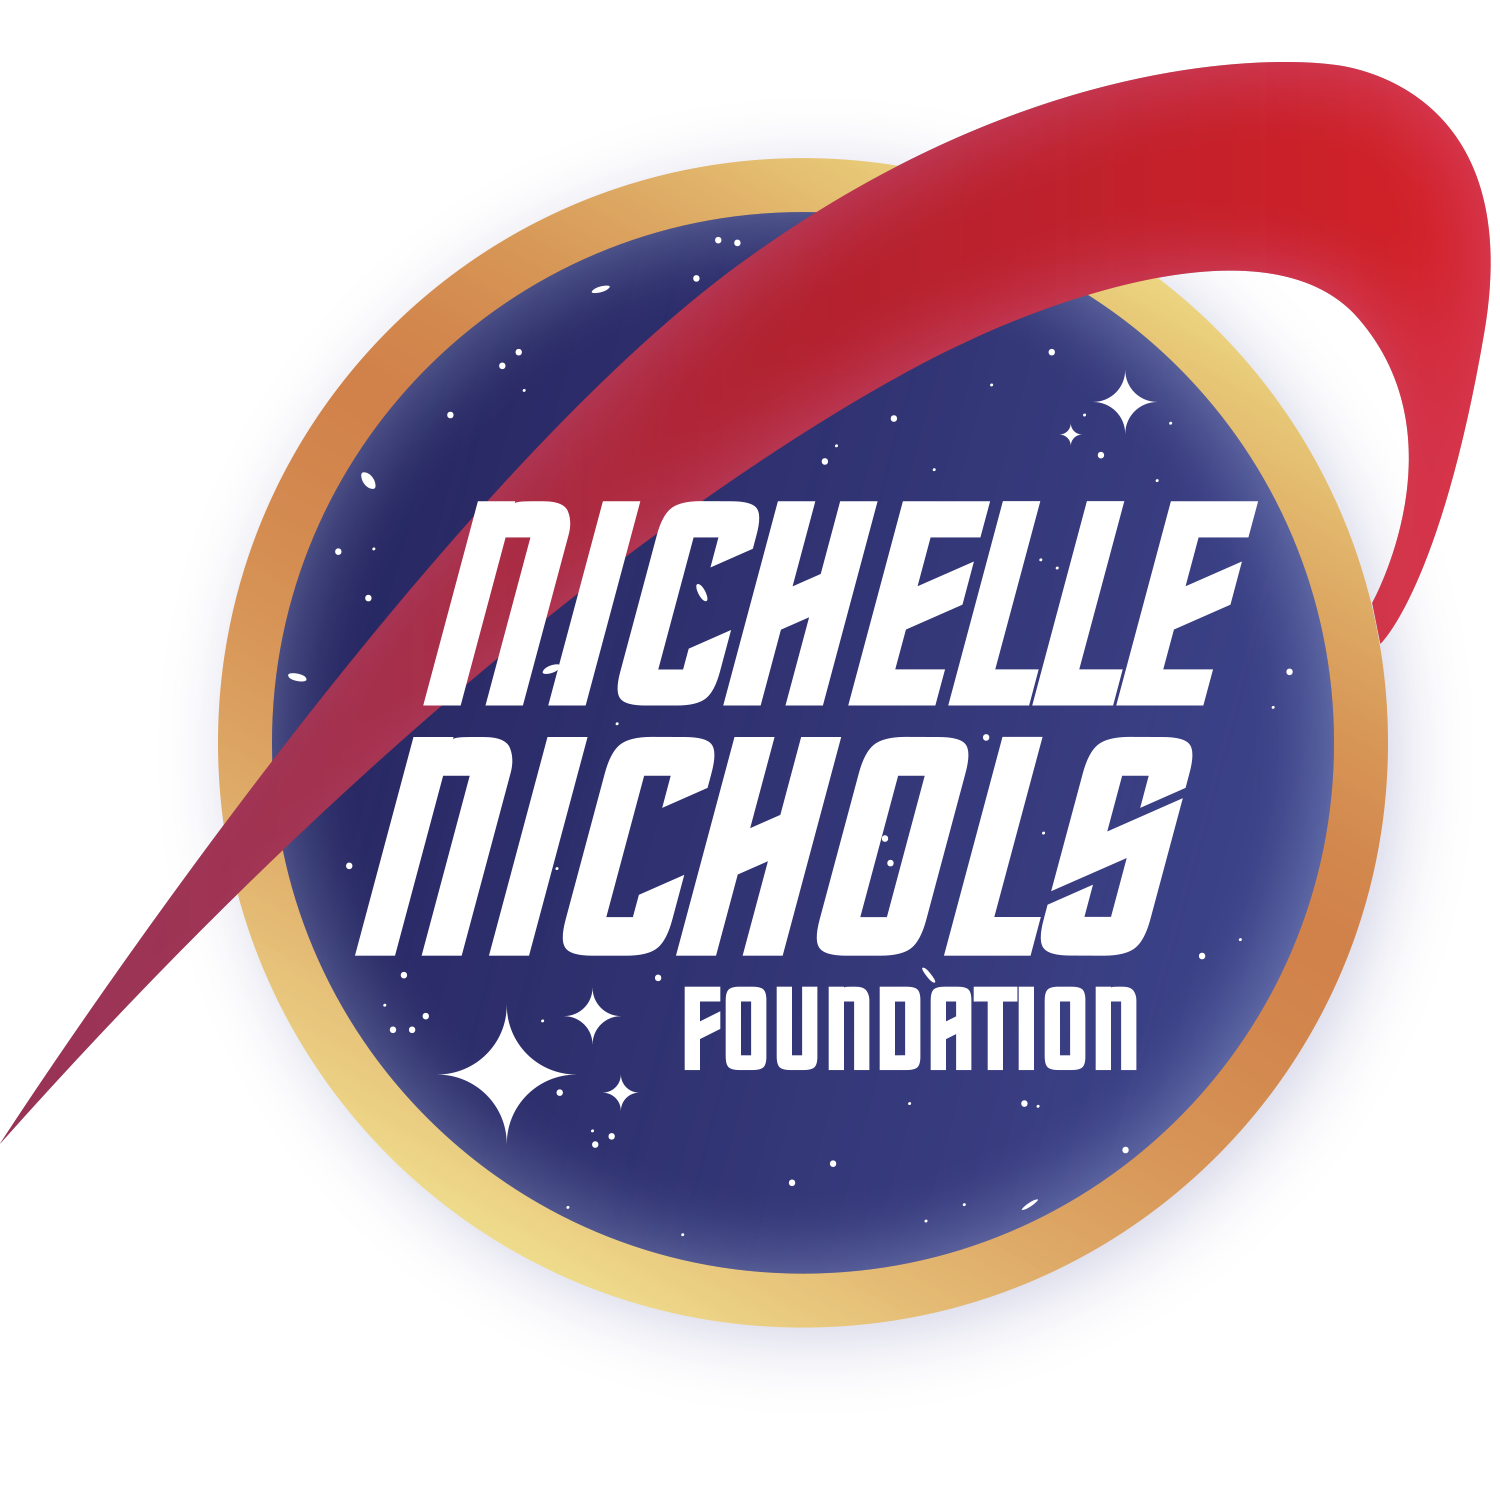 Nichelle Nichols Foundation